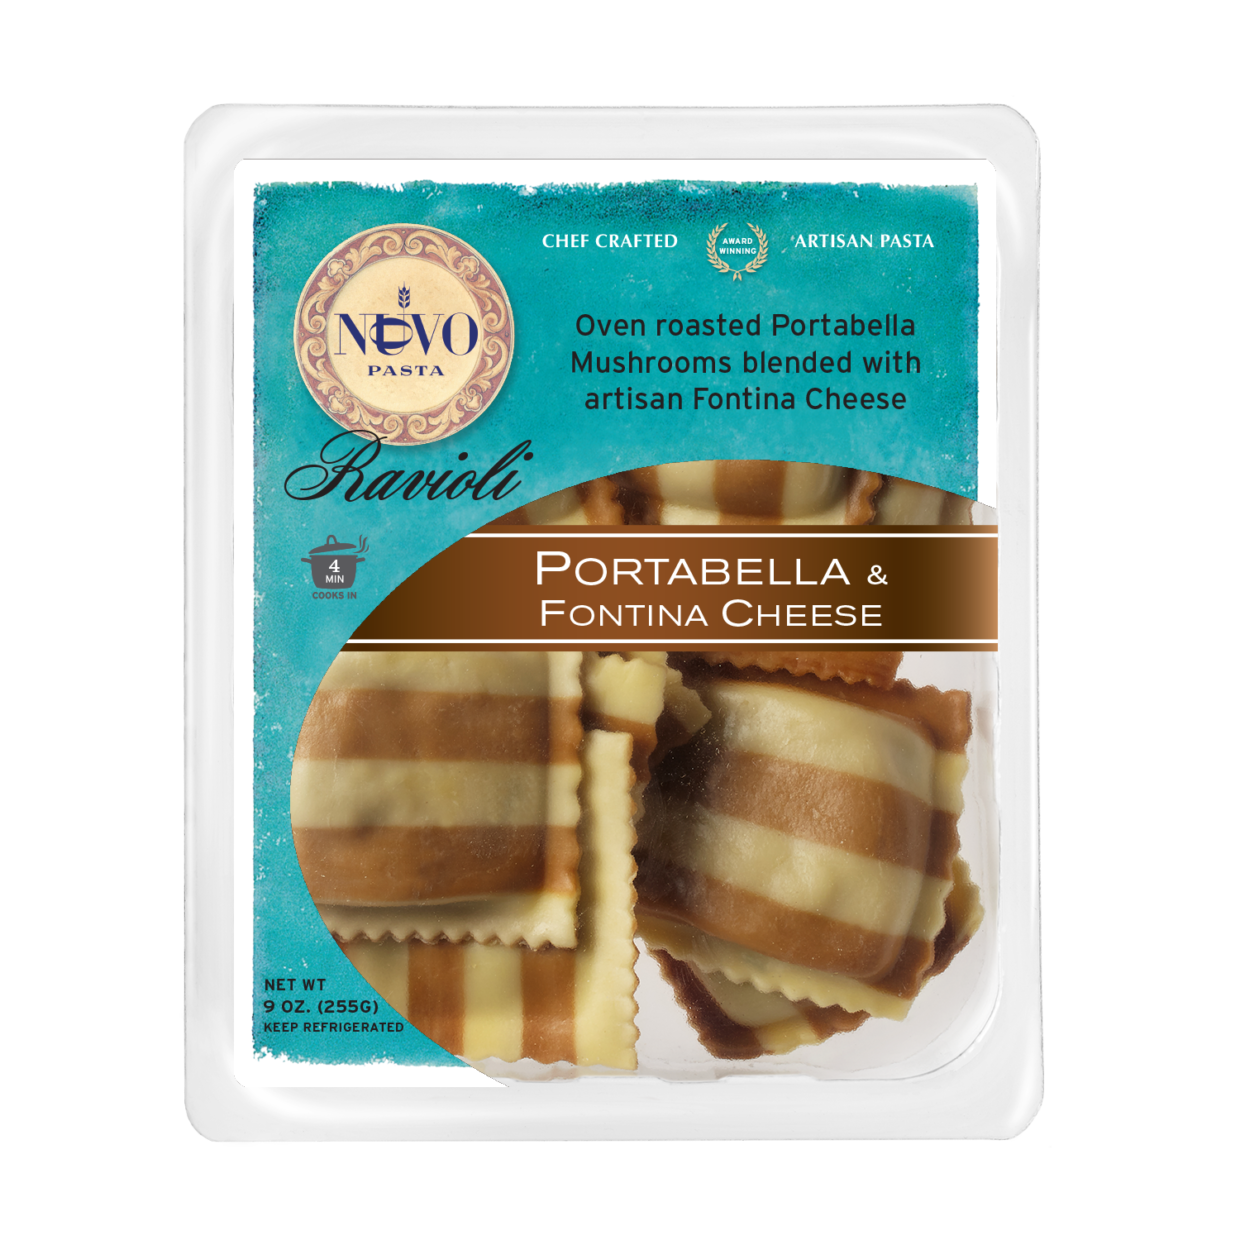 Portabella & Fontina Cheese Ravioli